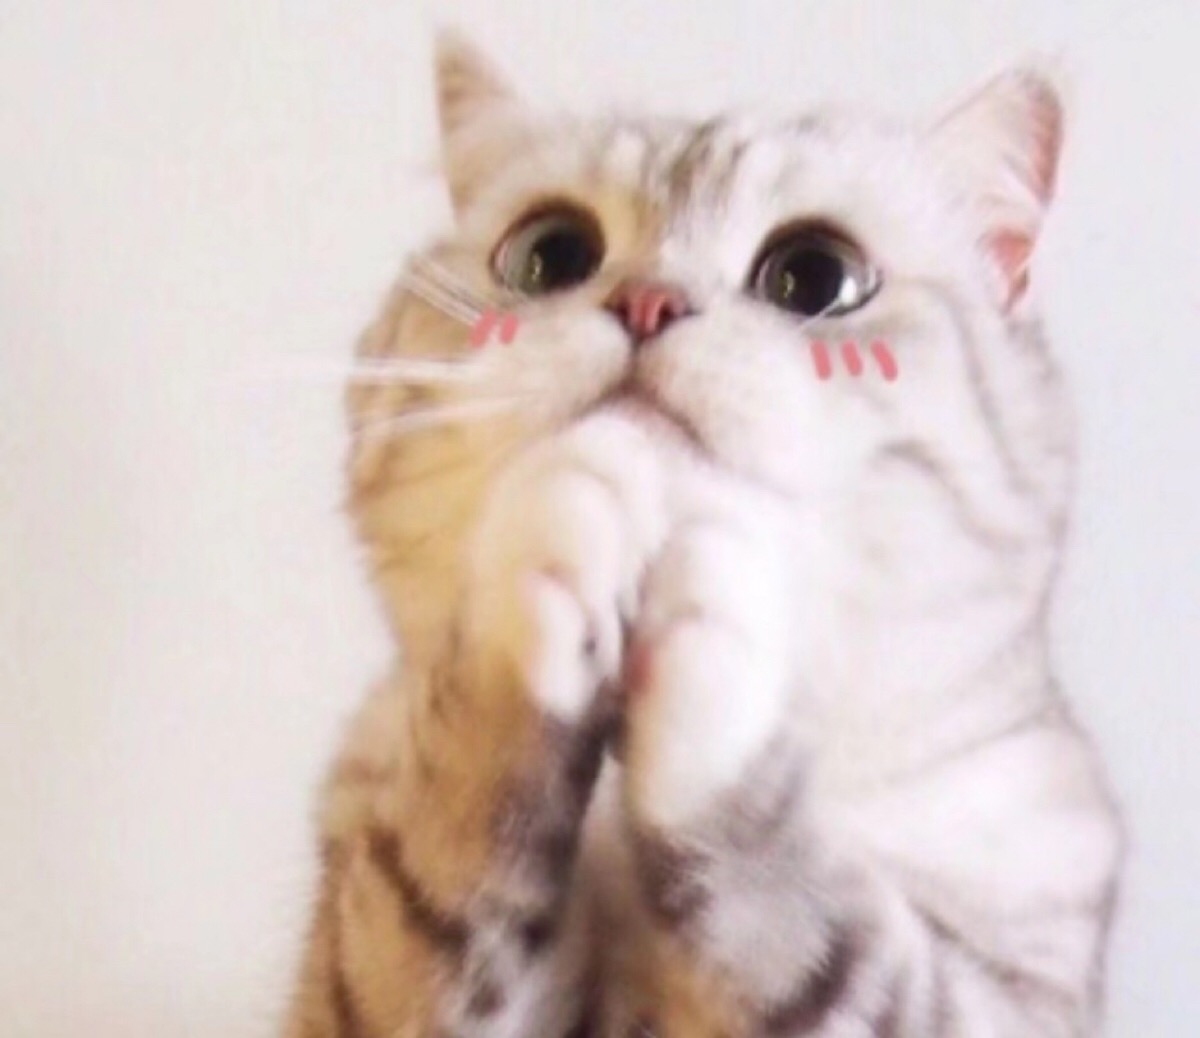 猫搓手手表情包图片